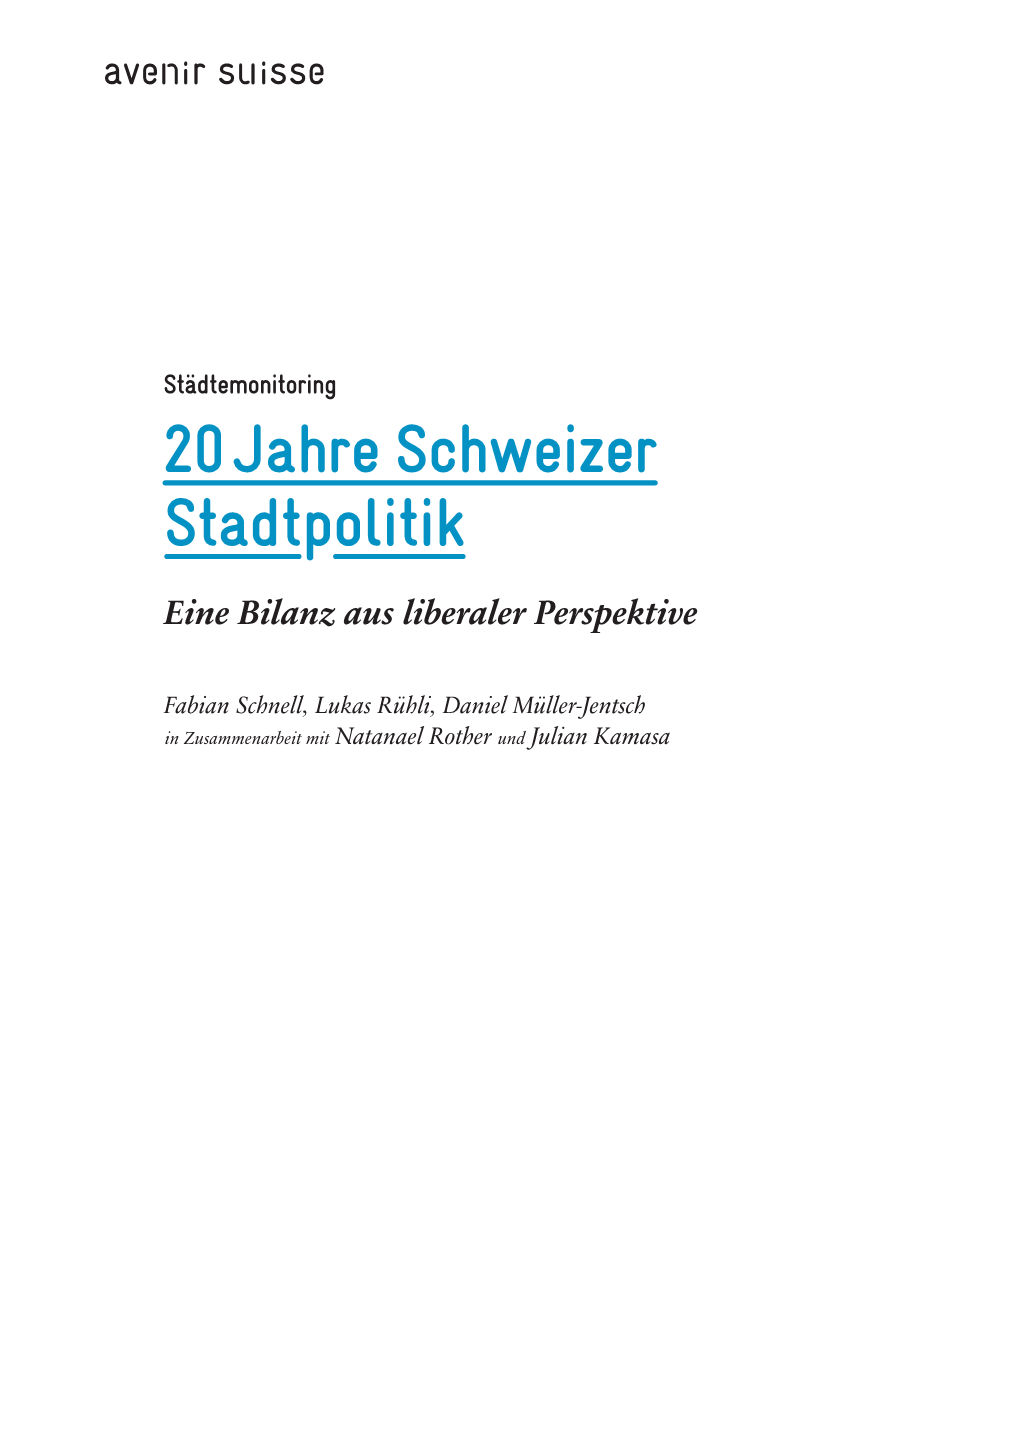 Städtemonitoring 20 Jahre Schweizer Stadtpolitik